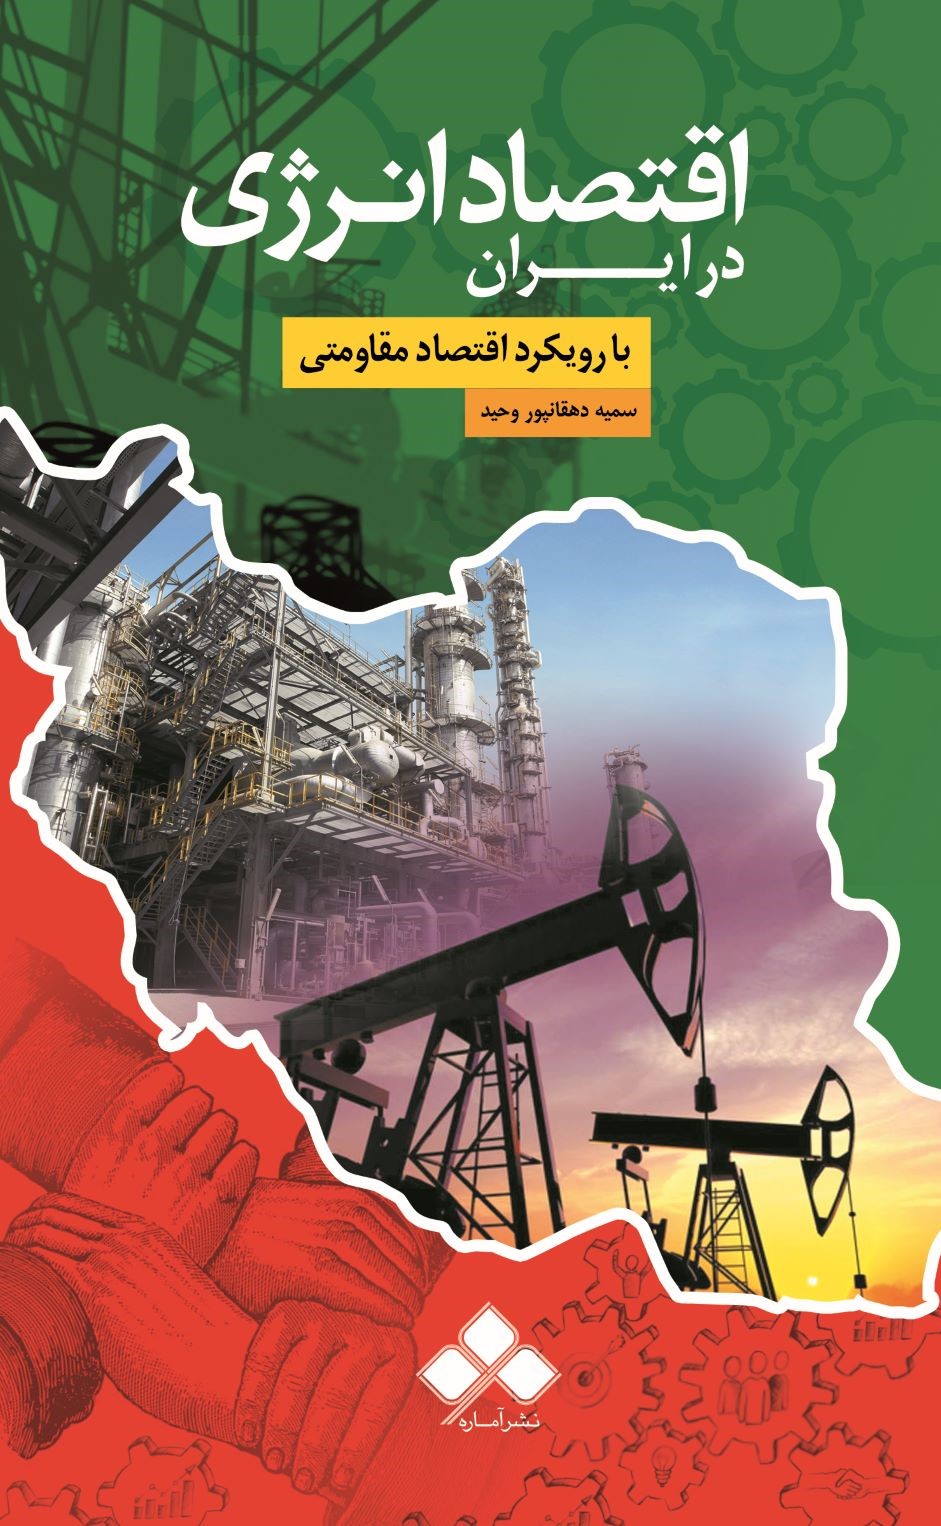  کتاب اقتصاد انرژی در ایران (با رویکرد اقتصاد مقاومتی)